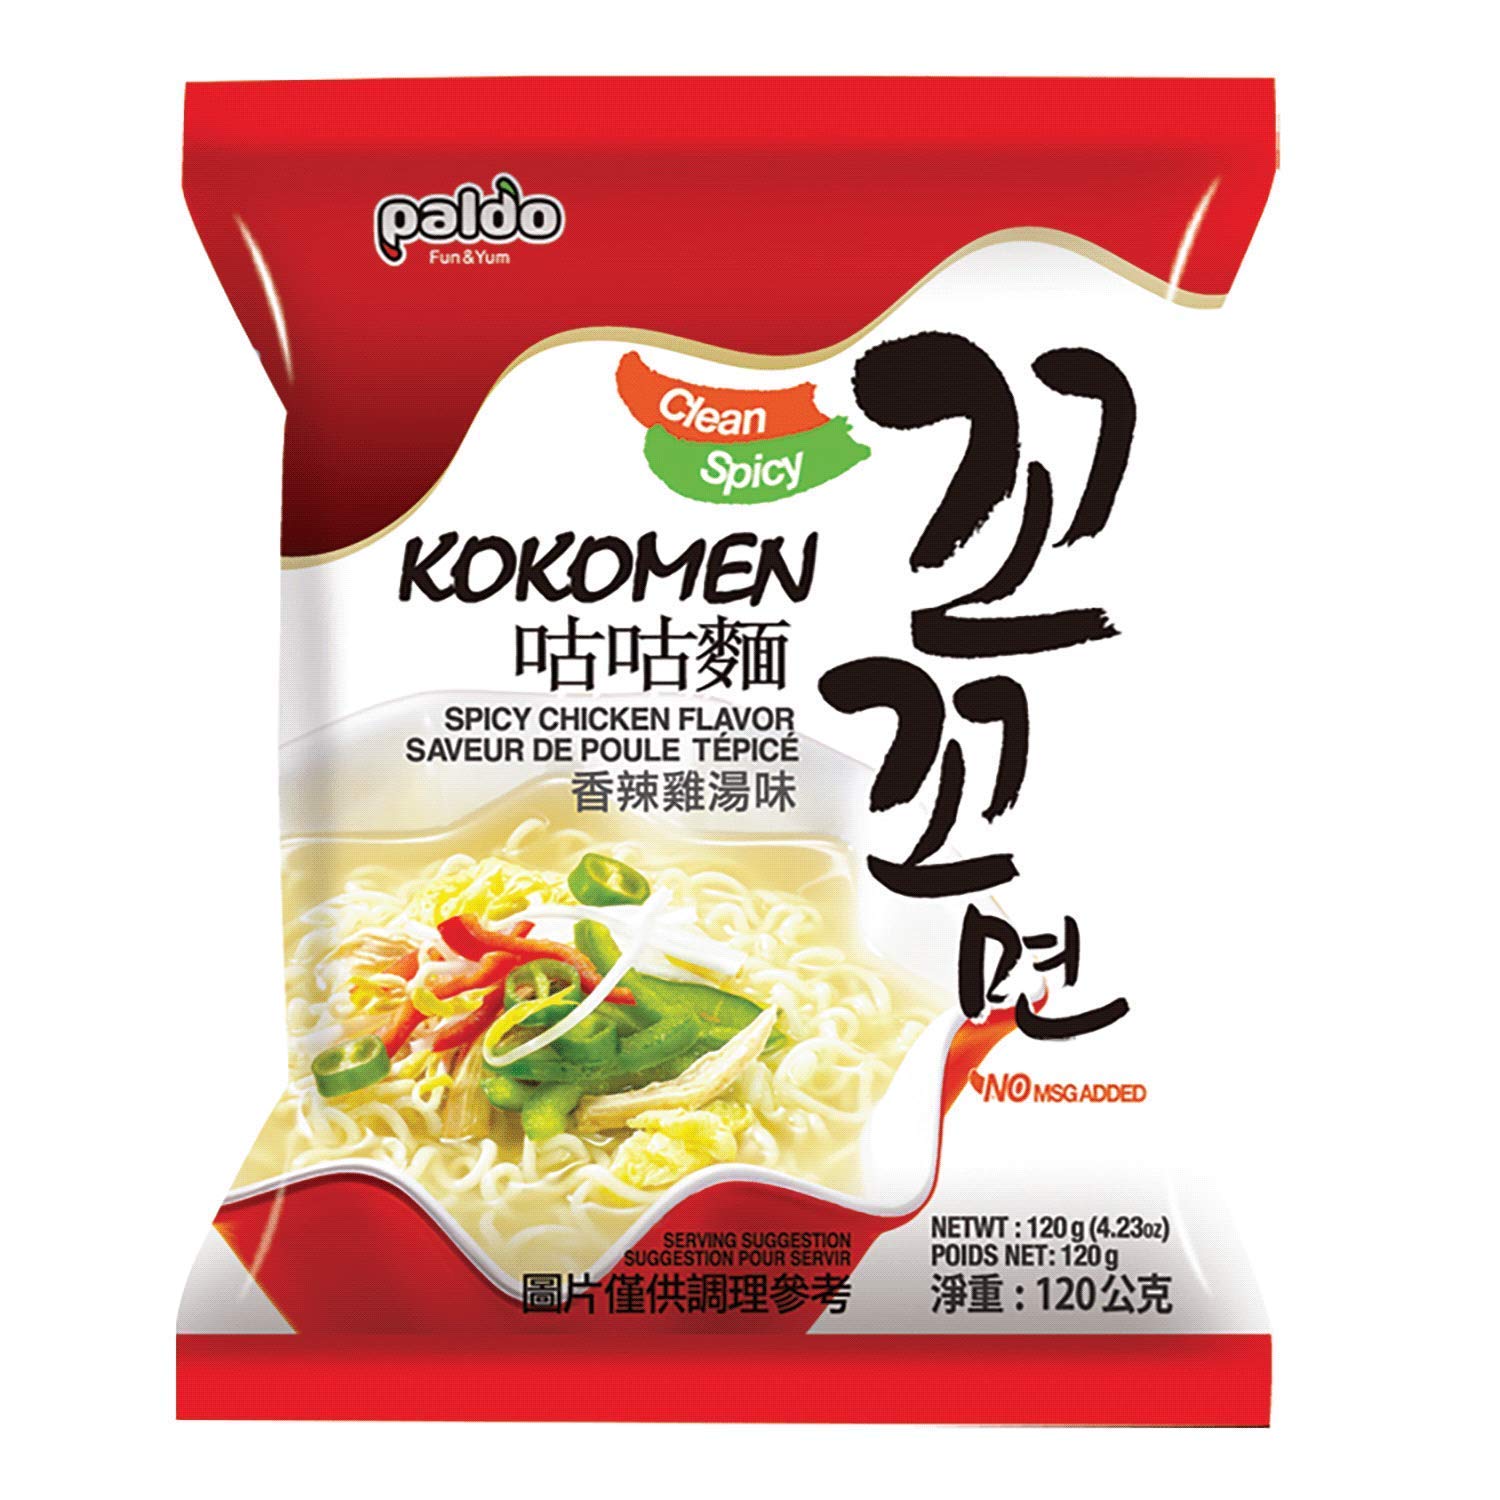 Amazon.com : Paldo Fun & Yum Kokomen Ramen Hot Spicy Chicken Soup Noodle  Ramen 5 Packs : Grocery & Gourmet Food